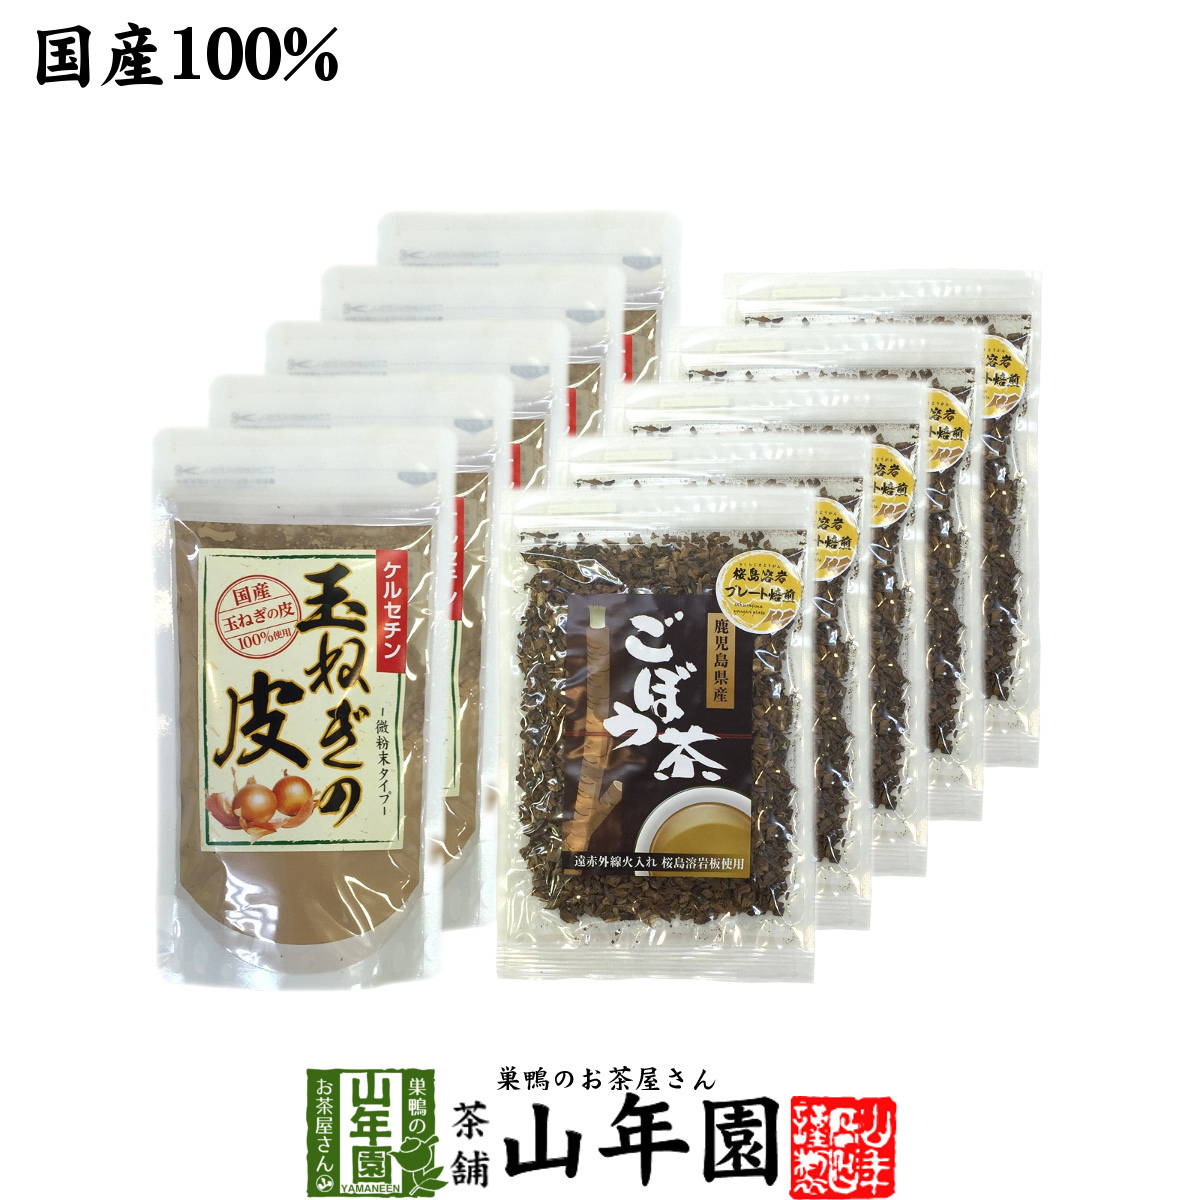 健康茶 玉ねぎの皮とごぼう茶セット 10袋セット(500g+350g) 国産 送料